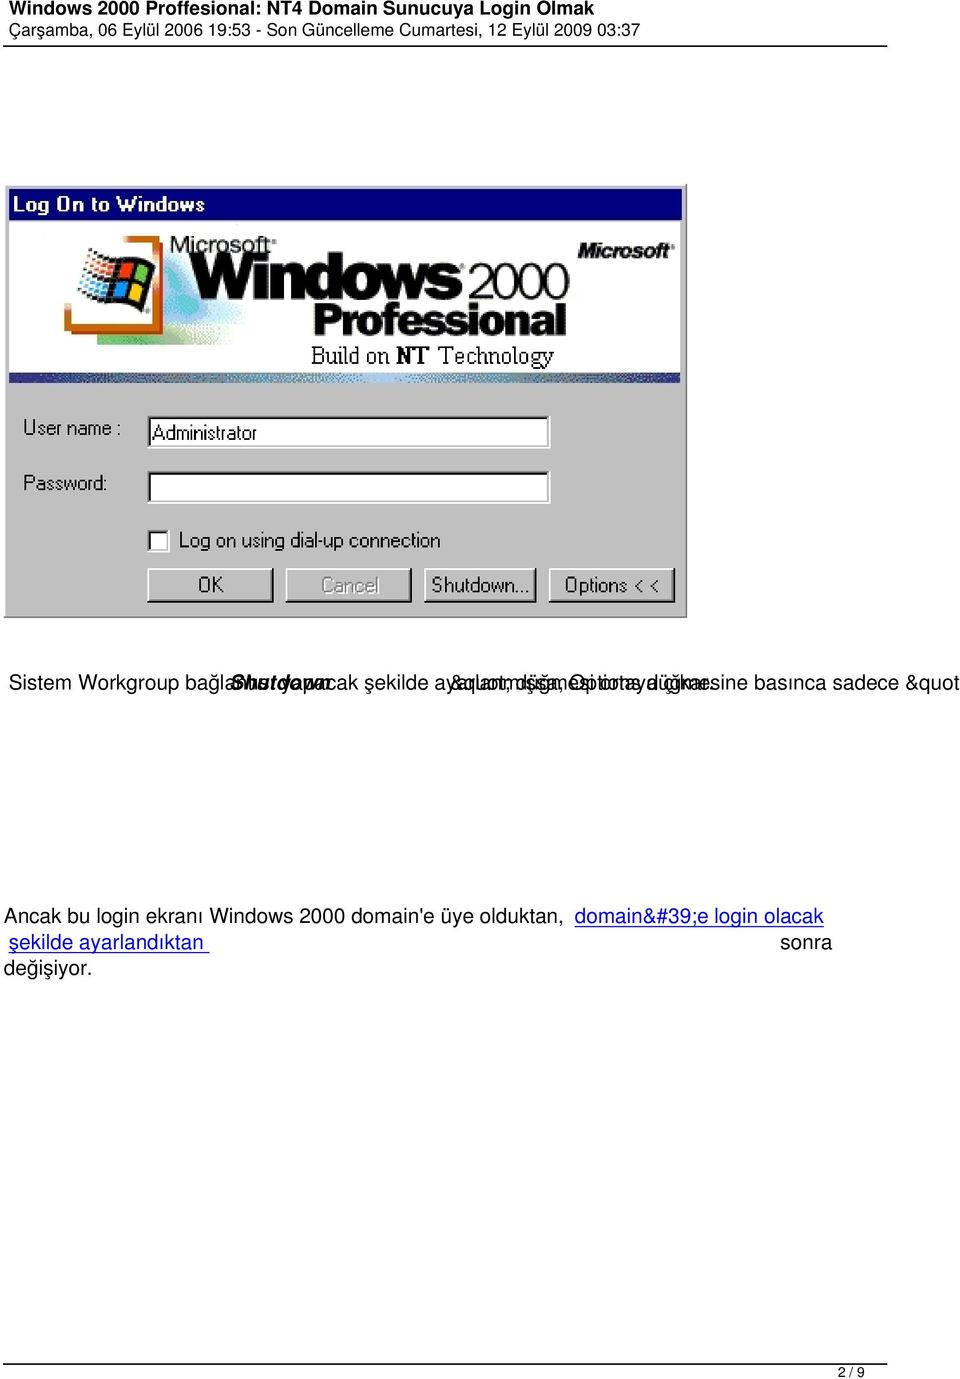 basınca sadece " Ancak bu login ekranı Windows 2000 domain'e